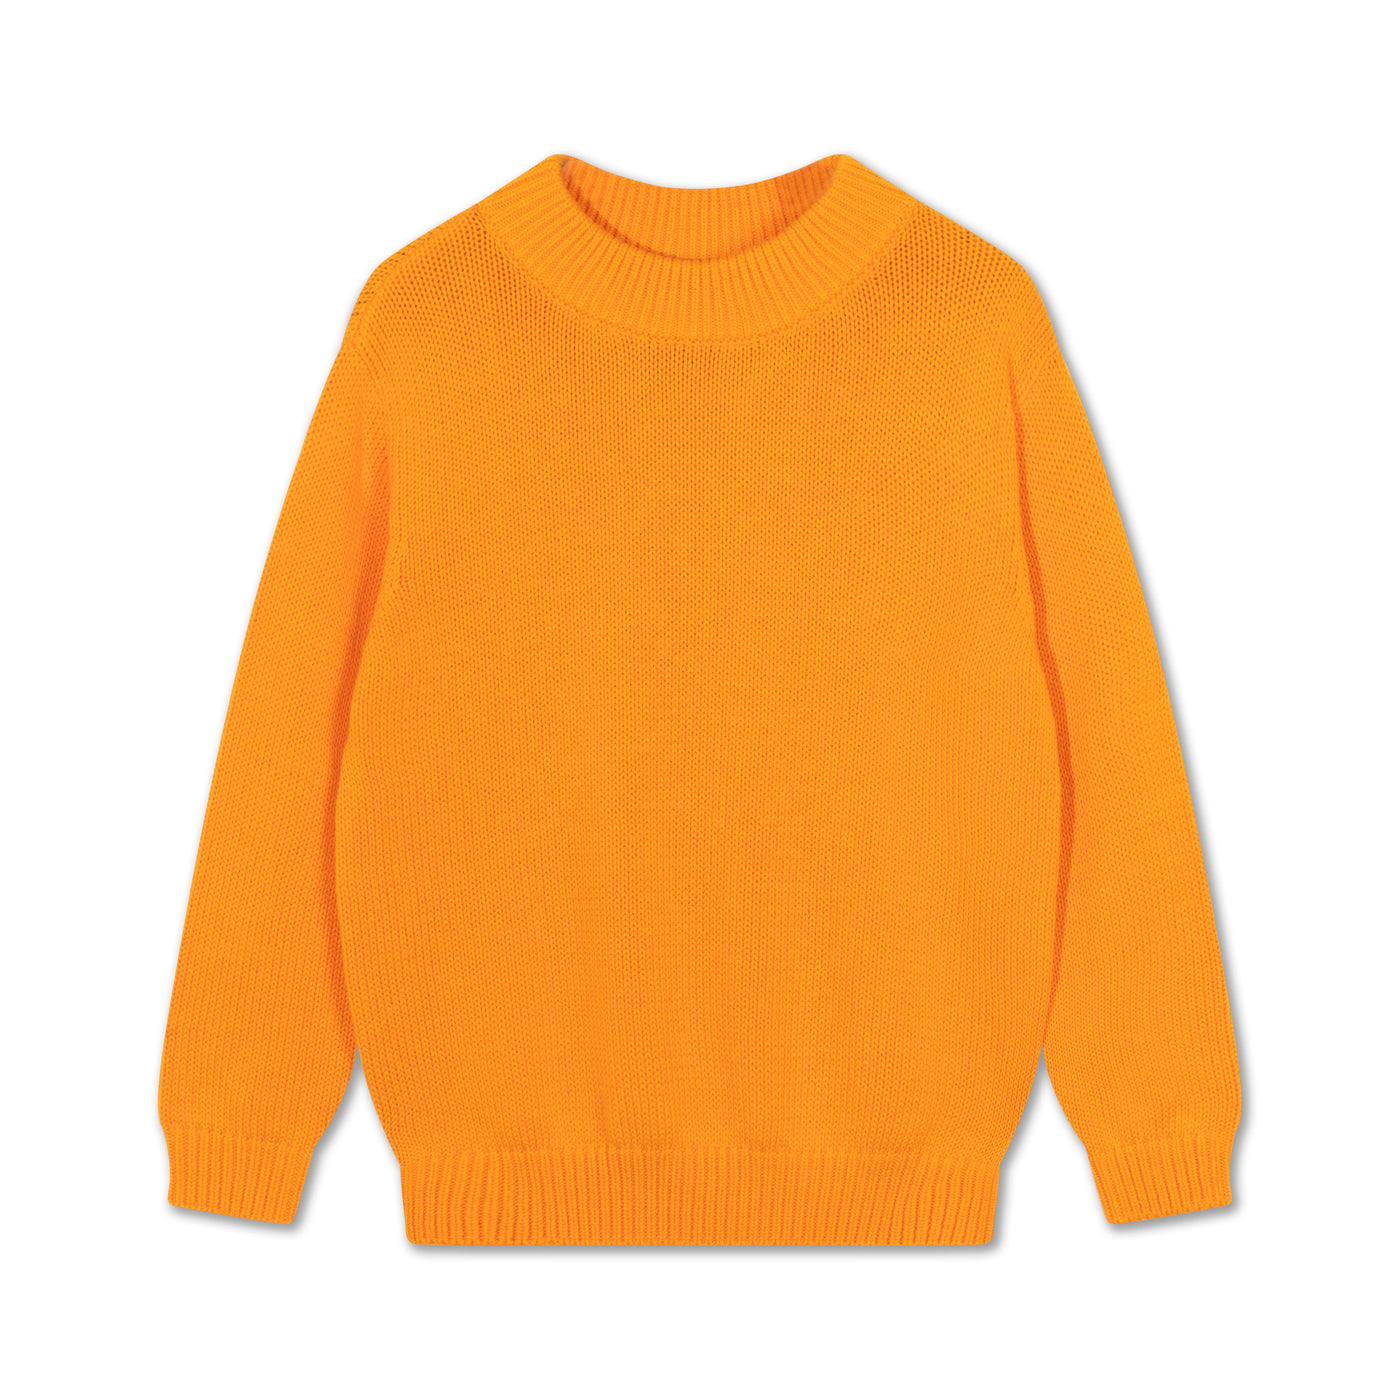 knit boxy sweater - glory orange